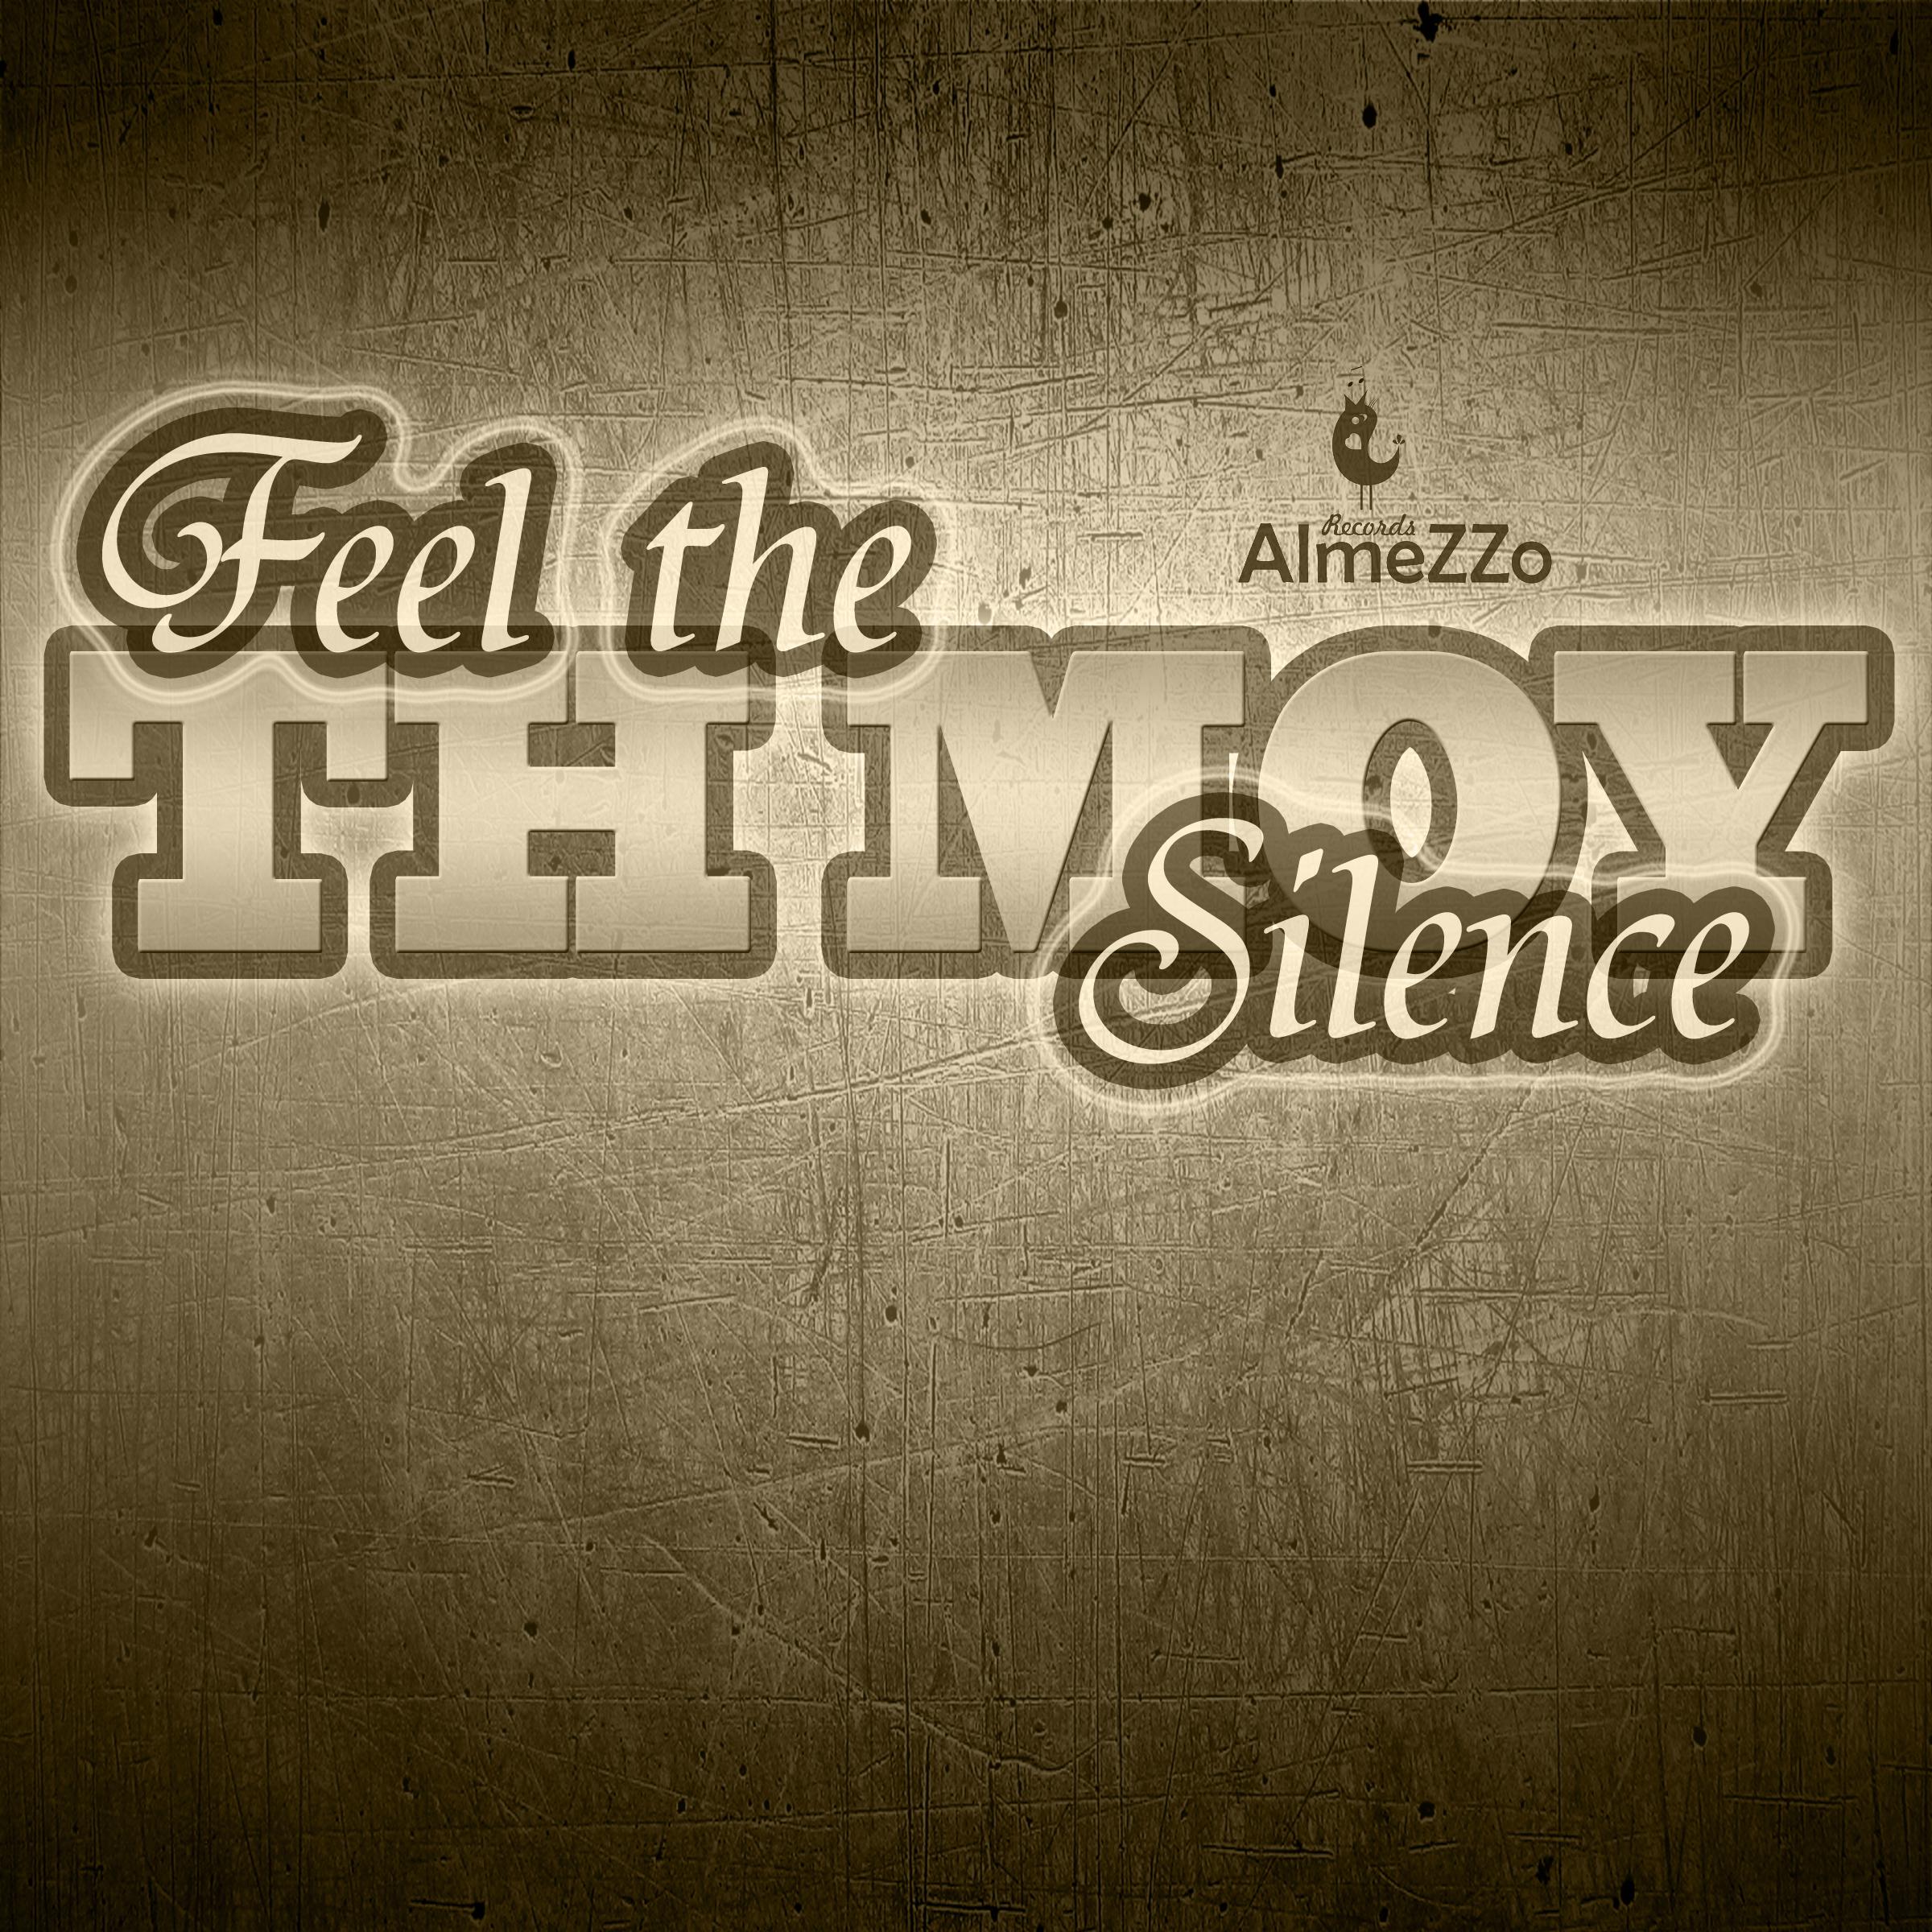 Feel the Silence